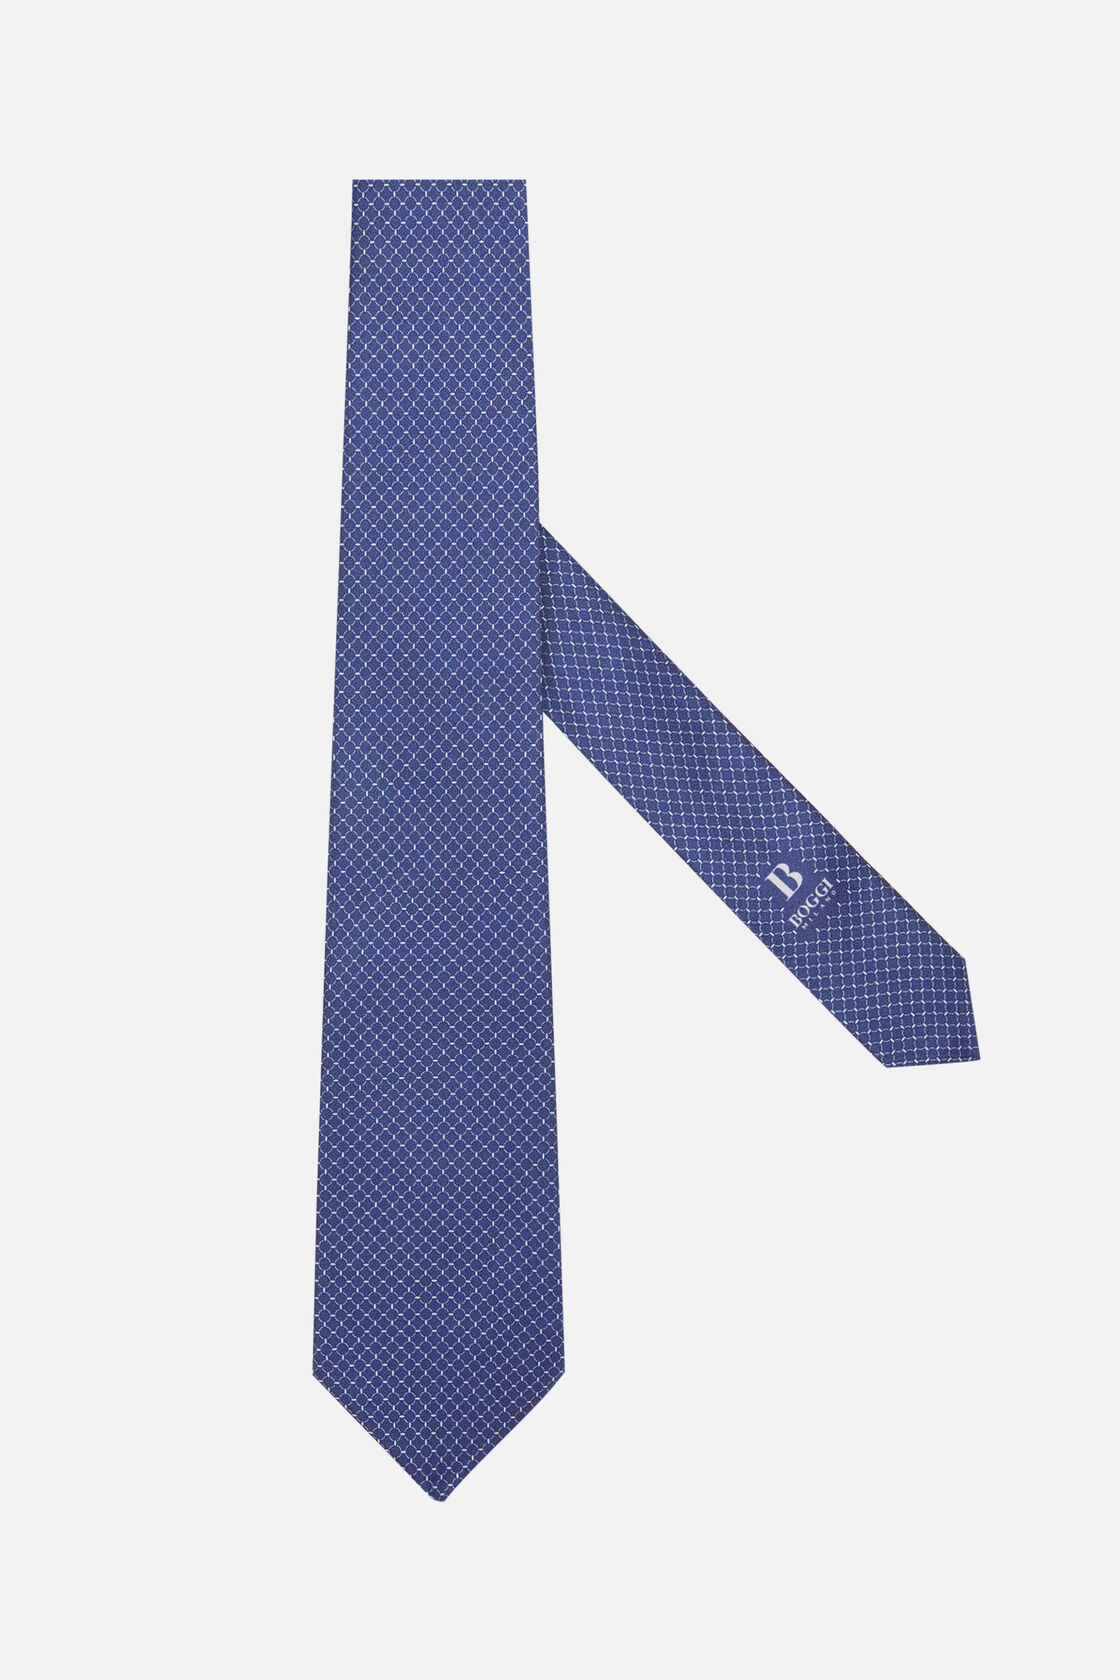 Gravata de Seda com Padrão de Estribo, Navy blue, hi-res